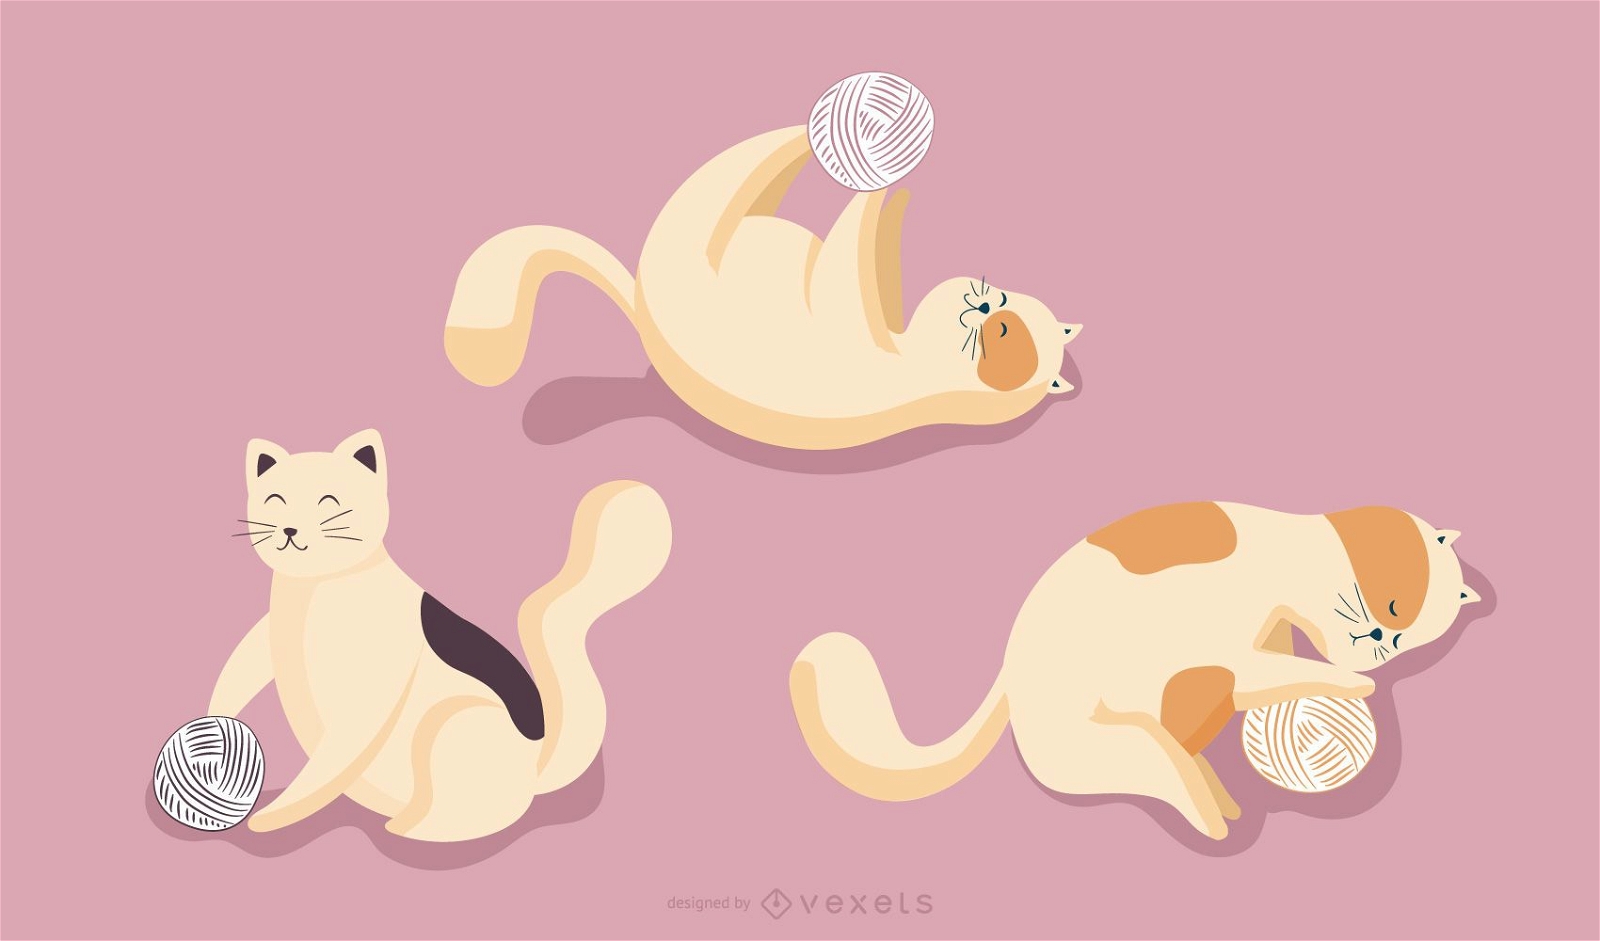 Hello Kitty illustrations set